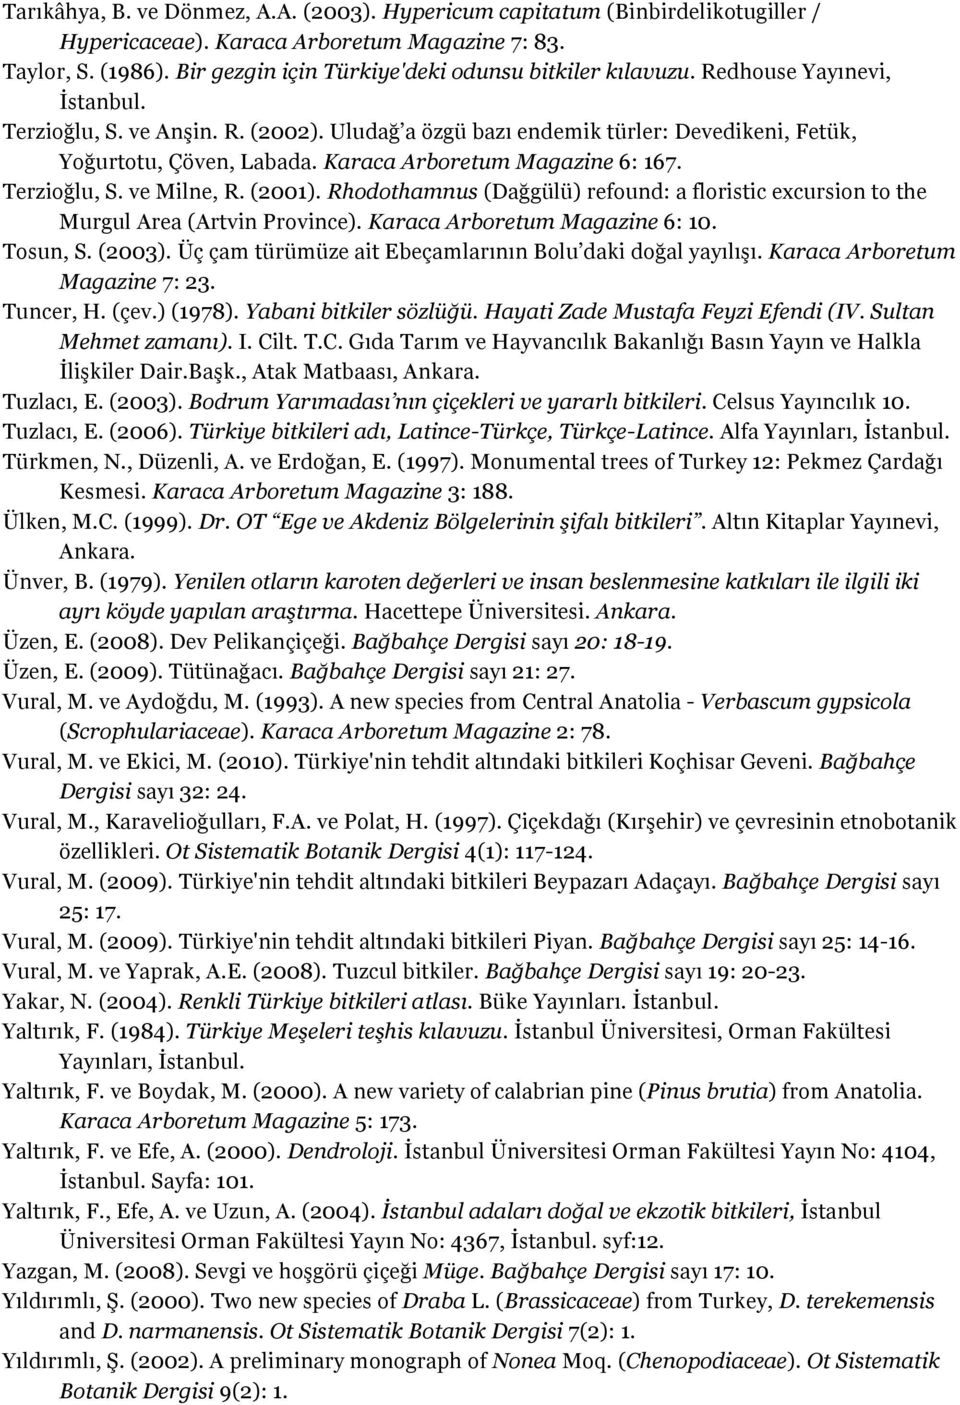 Karaca Arboretum Magazine 6: 167. Terzioğlu, S. ve Milne, R. (2001). Rhodothamnus (Dağgülü) refound: a floristic excursion to the Murgul Area (Artvin Province). Karaca Arboretum Magazine 6: 10.